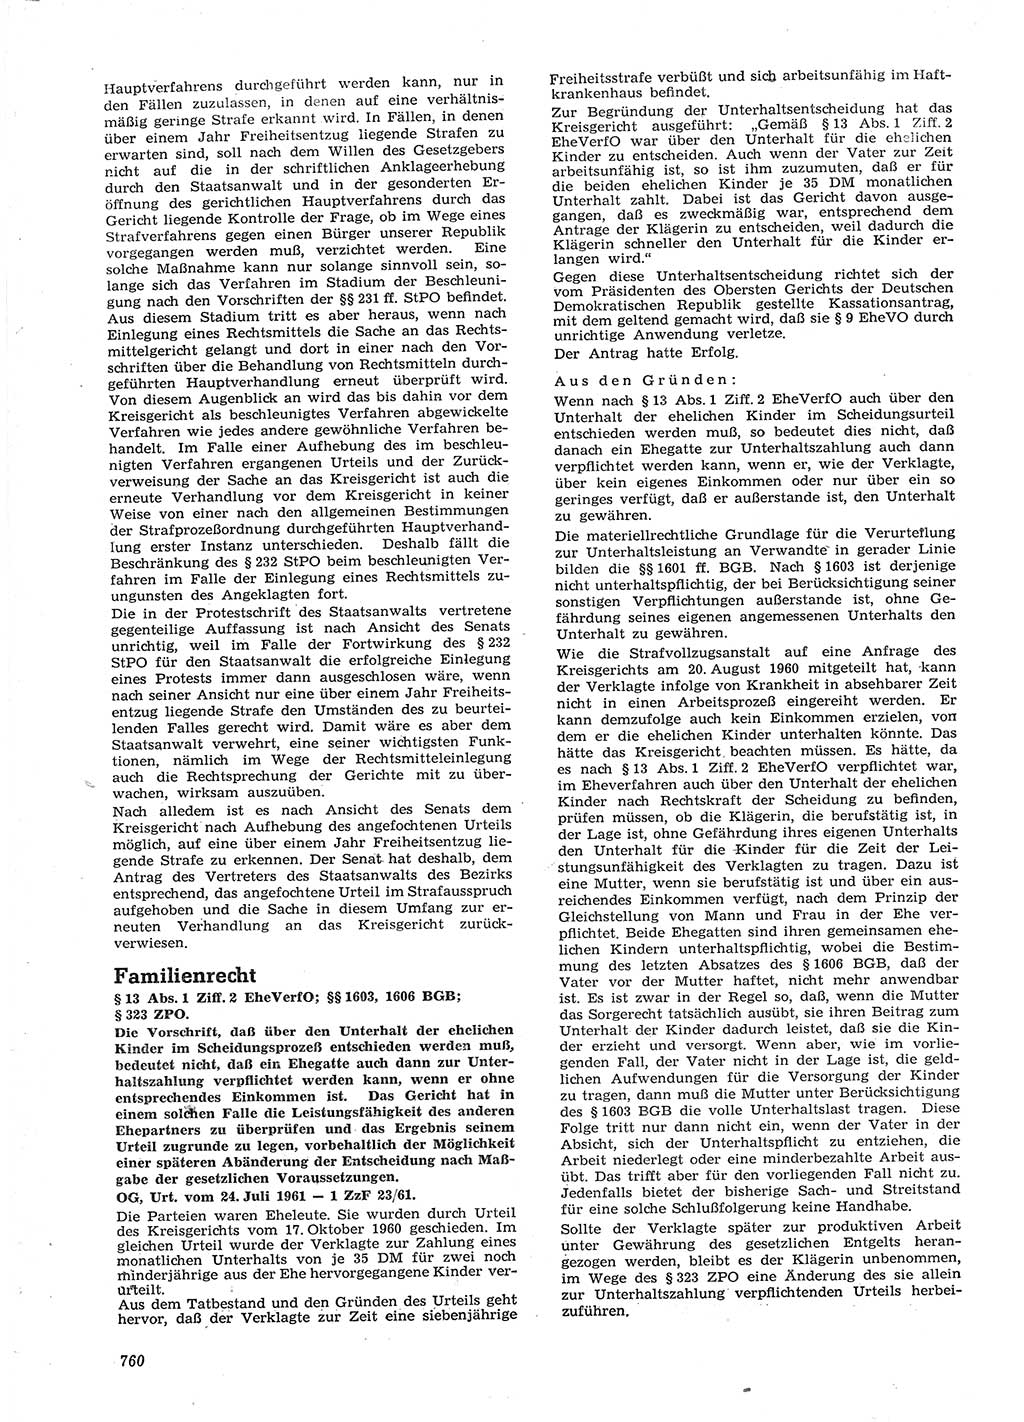 Neue Justiz (NJ), Zeitschrift für Recht und Rechtswissenschaft [Deutsche Demokratische Republik (DDR)], 15. Jahrgang 1961, Seite 760 (NJ DDR 1961, S. 760)